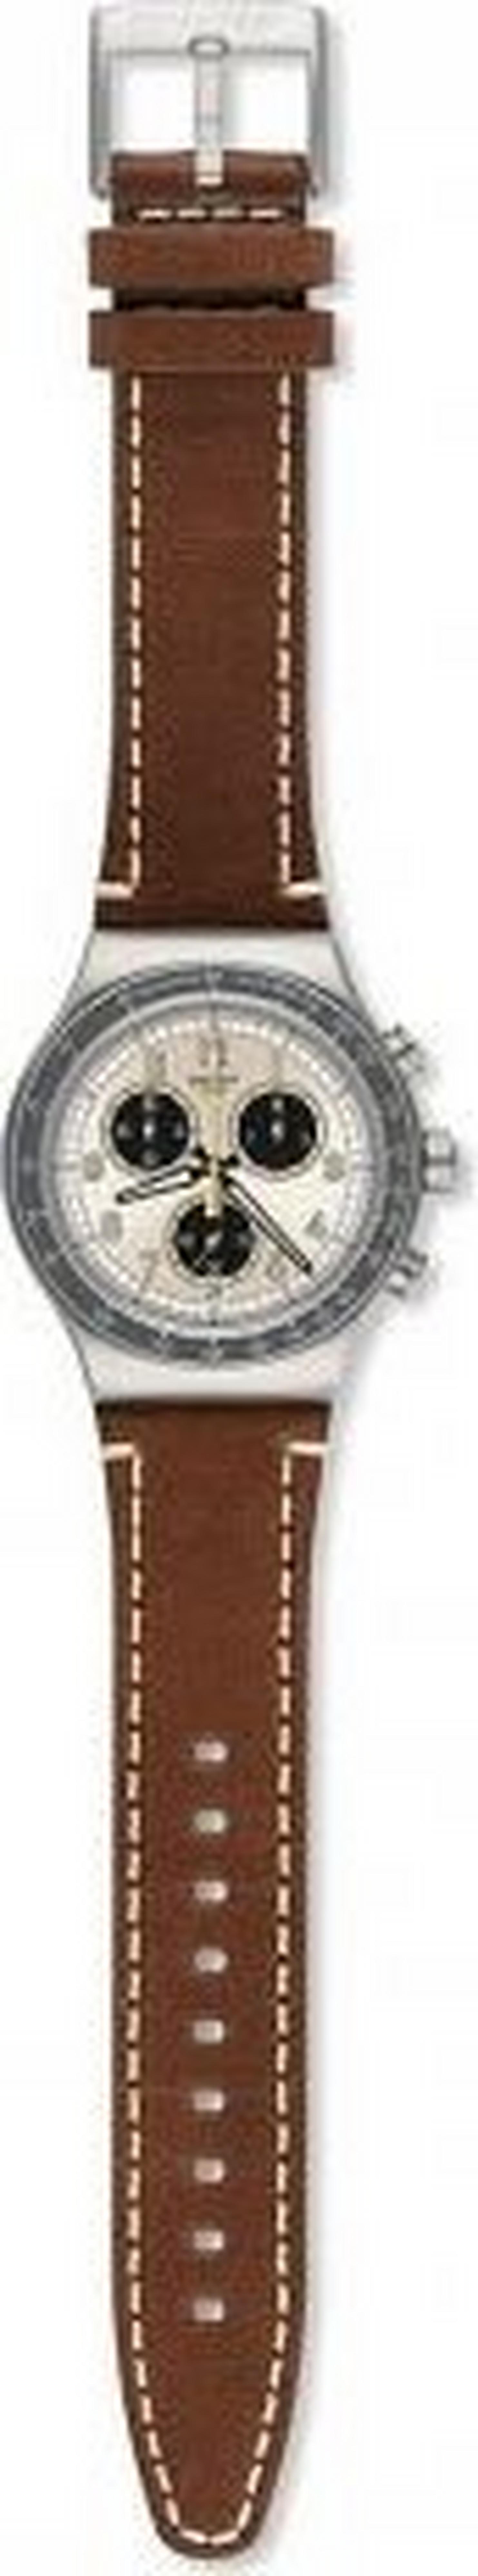 ساعة سواتش بعرض كرونوغراف وحزام من الجلد للرجال - ٤٣ ملم - بني (SWAYVS455)